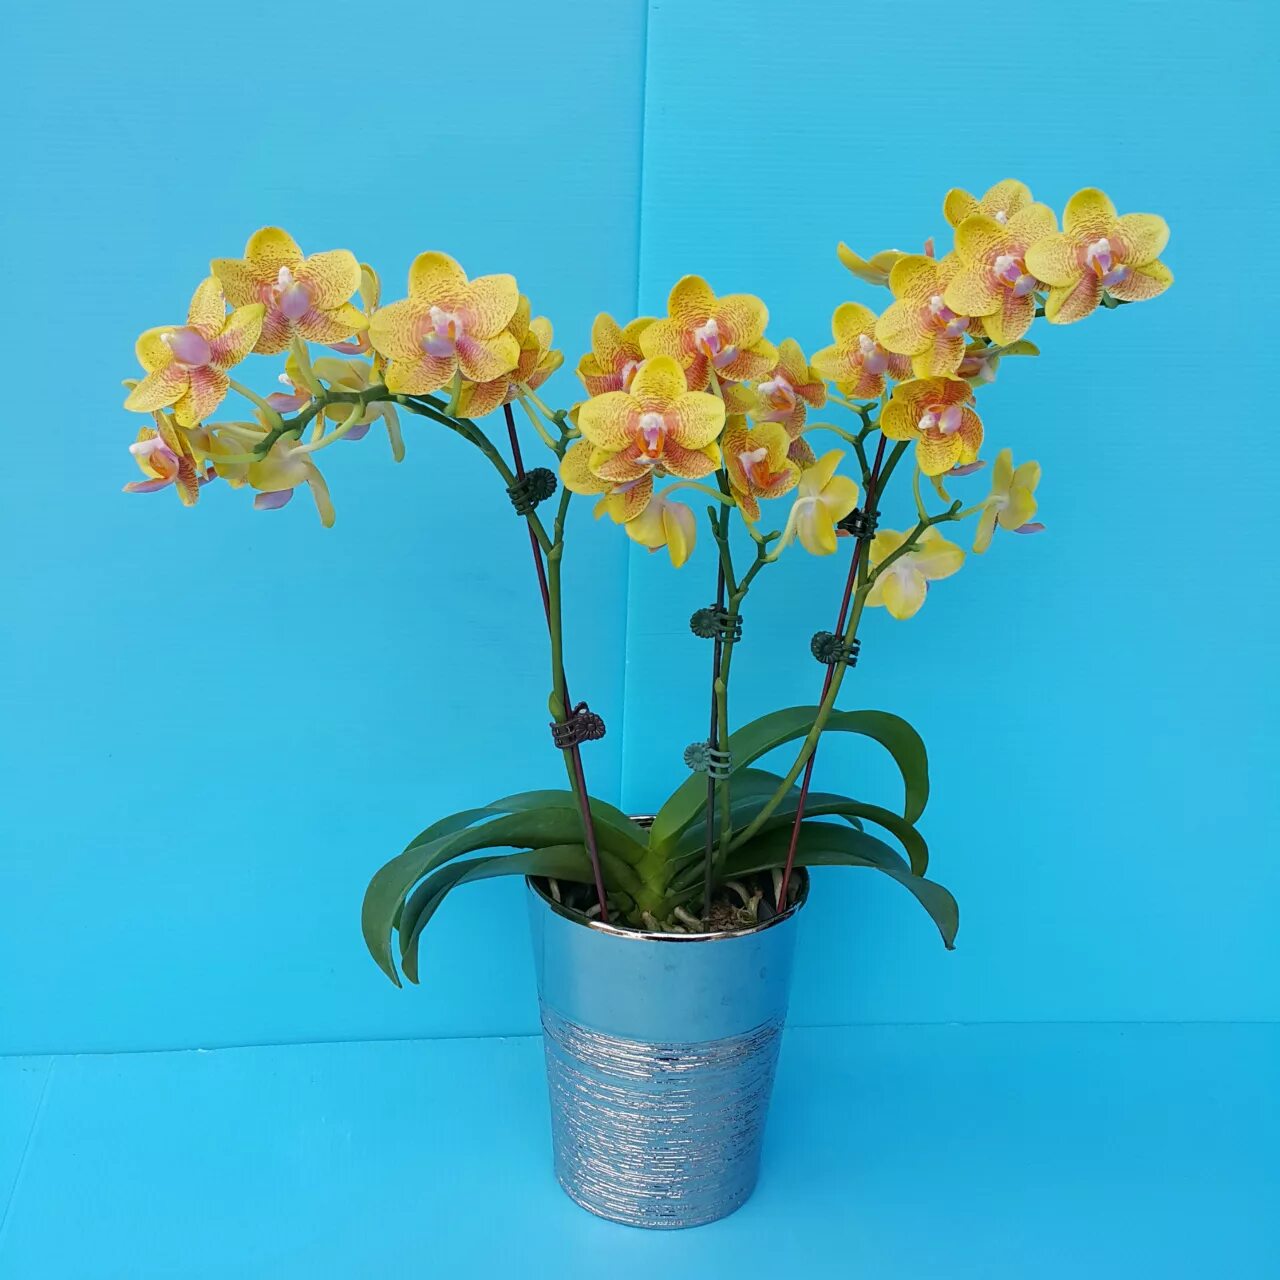 Купить желтую орхидею в горшке. Фаленопсис ov Geel. Фаленопсис van Geel. Фаленопсис Еллоу Шайн керл. Phal PF 6818.